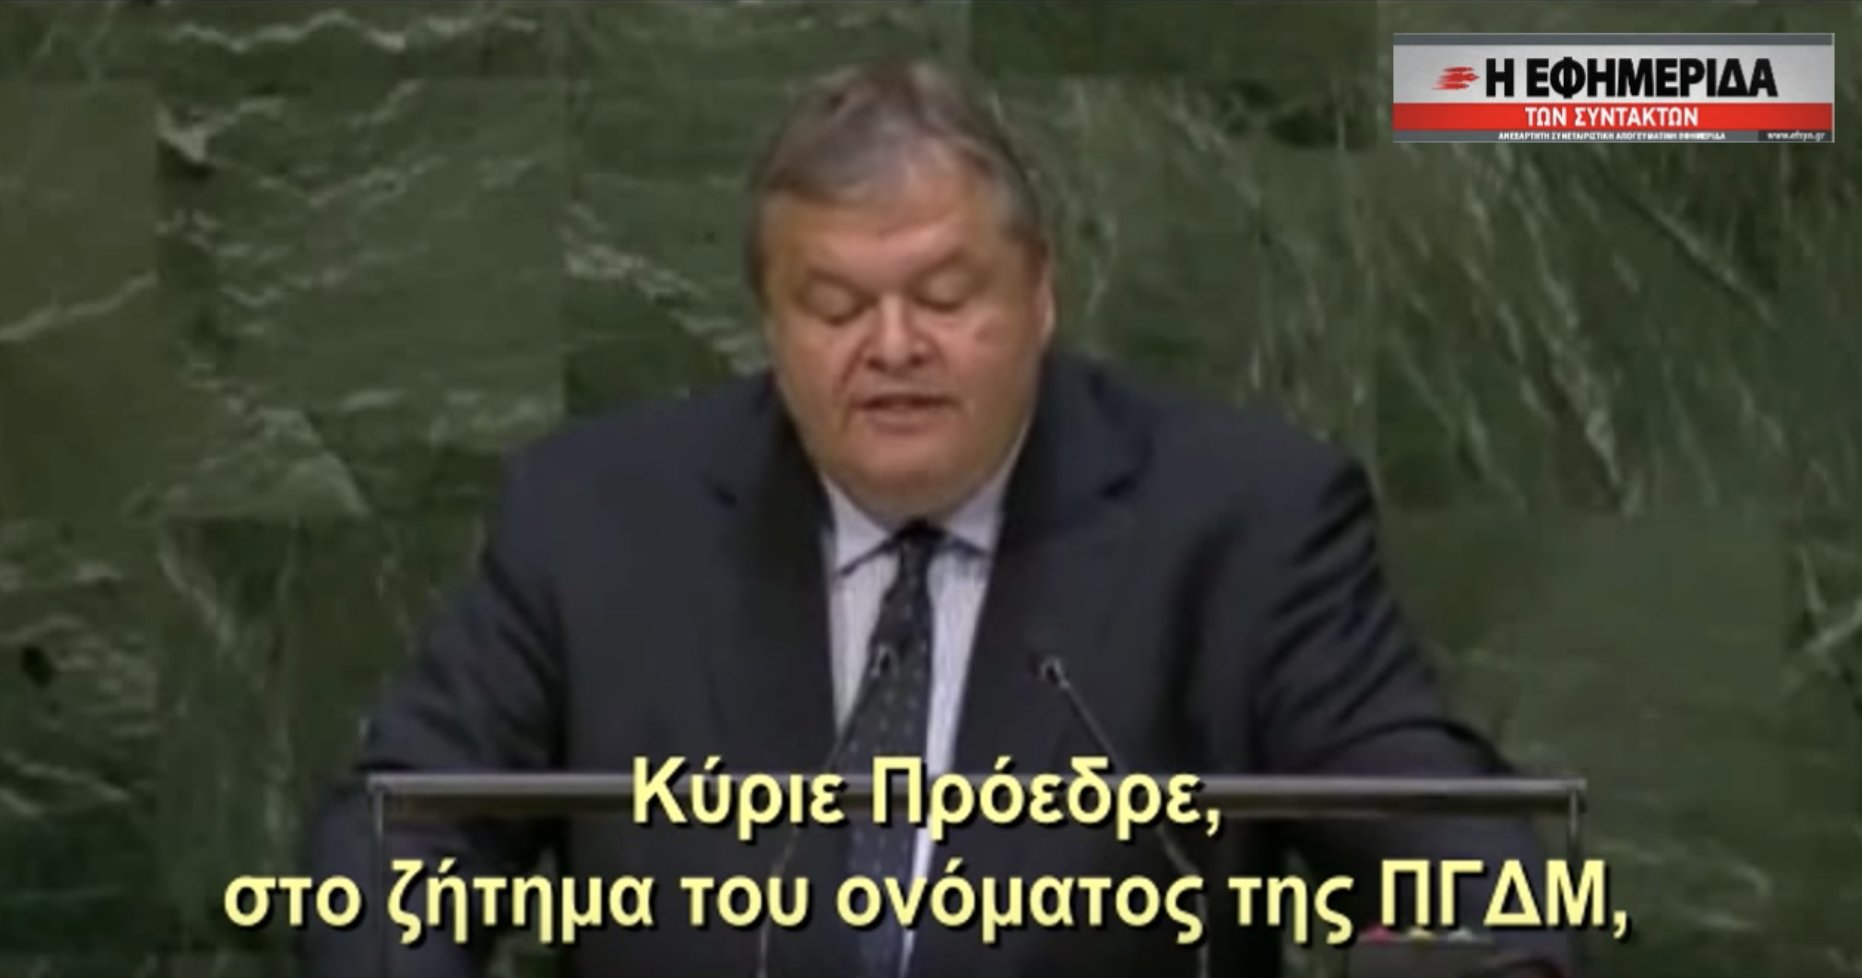 Ο Ευάγγελος Βενιζελός απευθύνεται στον ΟΗΕ και δέχεται την ονομασία #Μακεδονία για τα Σκόπια